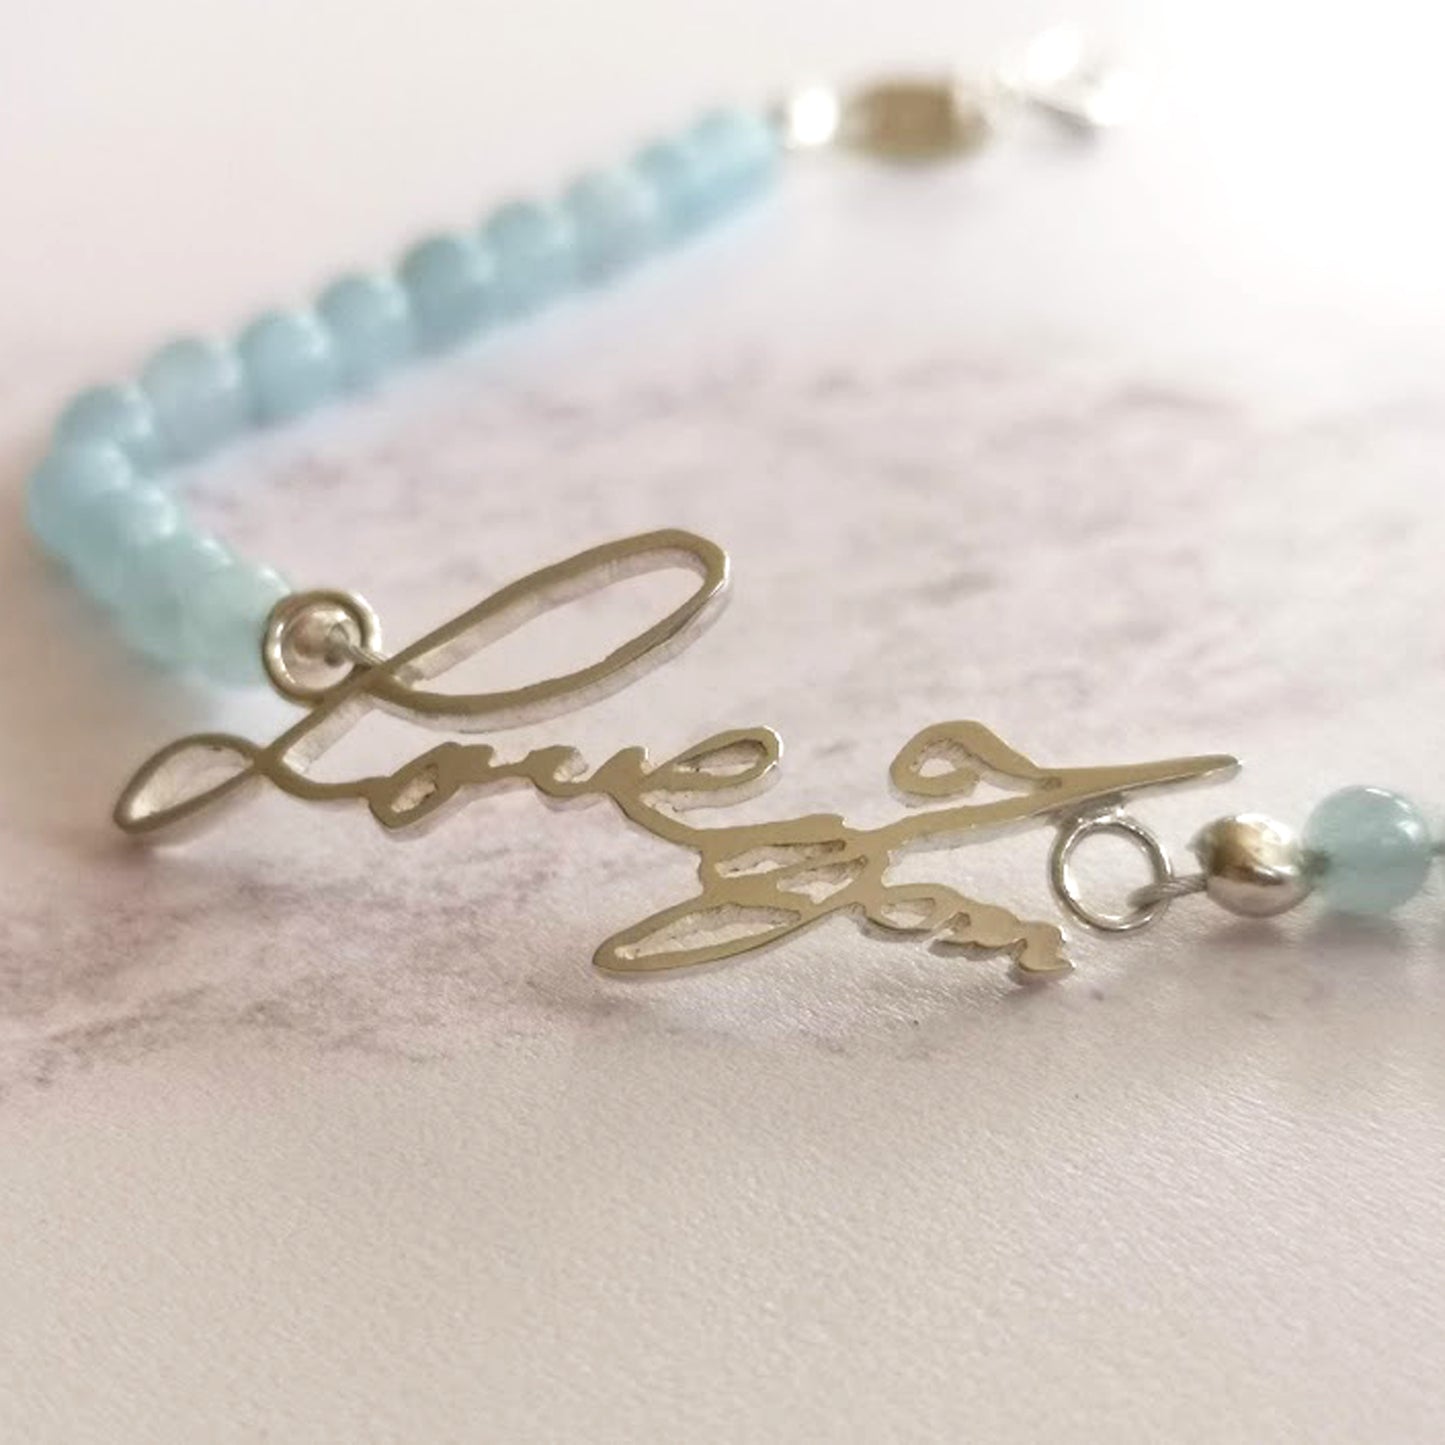 Handwriting bracelet with aquamarine gemstone beads